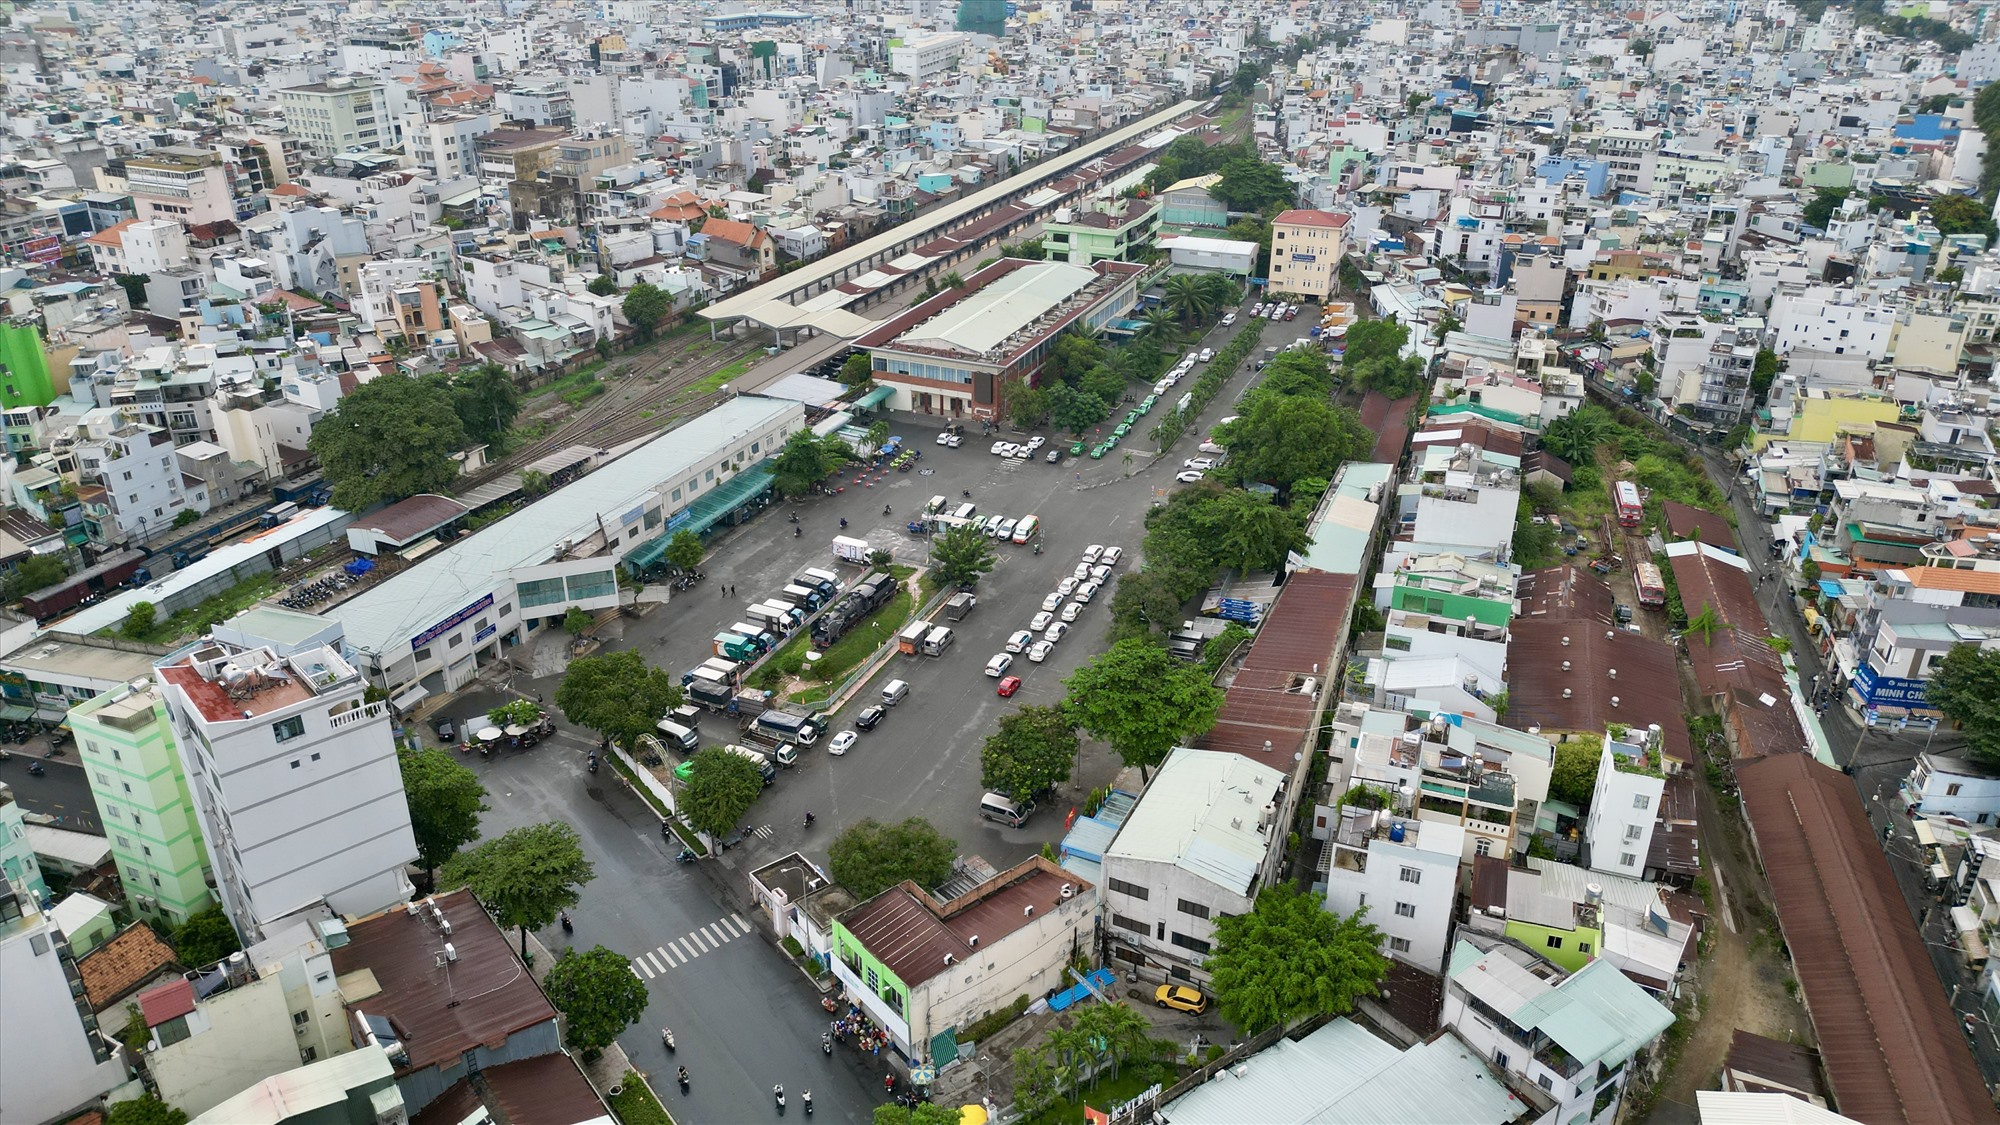 Trước đây, ga Sài Gòn gốc do Pháp xây dựng tại khu vực đường Hàm Nghi nay là Trạm trung chuyển Hàm Nghi (Quận 1), được khánh thành năm 1885. Năm 1911, người Pháp cho xây dựng ga Sài Gòn mới ở vị trí hiện nay là công viên 23/9 và bến xe buýt Sài Gòn, hoàn thành vào tháng 9.1915.